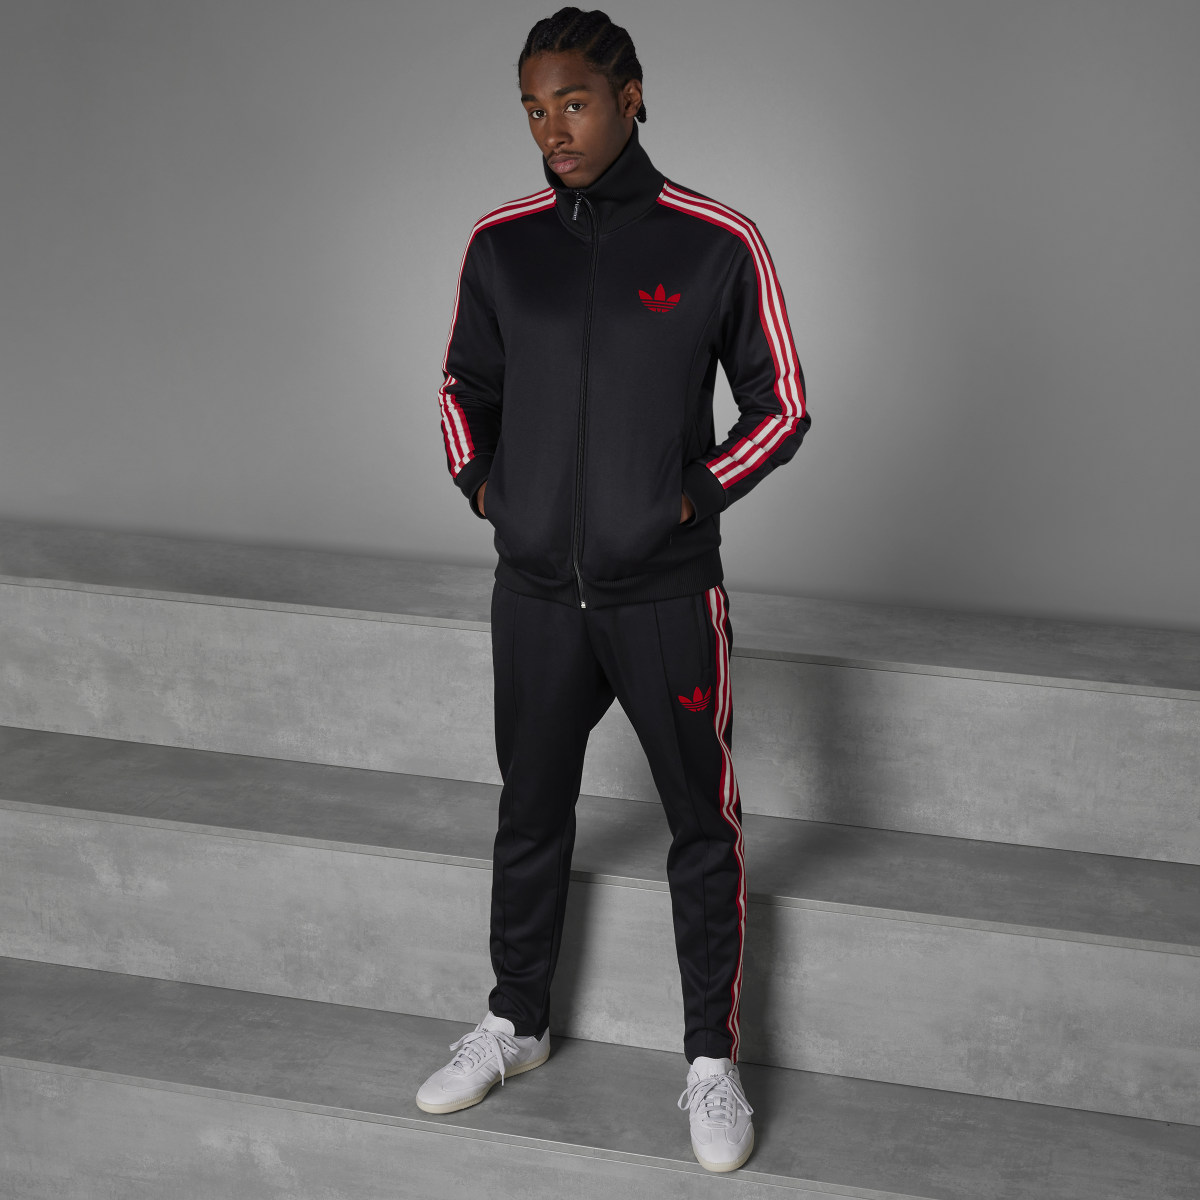 Adidas Track jacket OG Ajax Amsterdam. 4